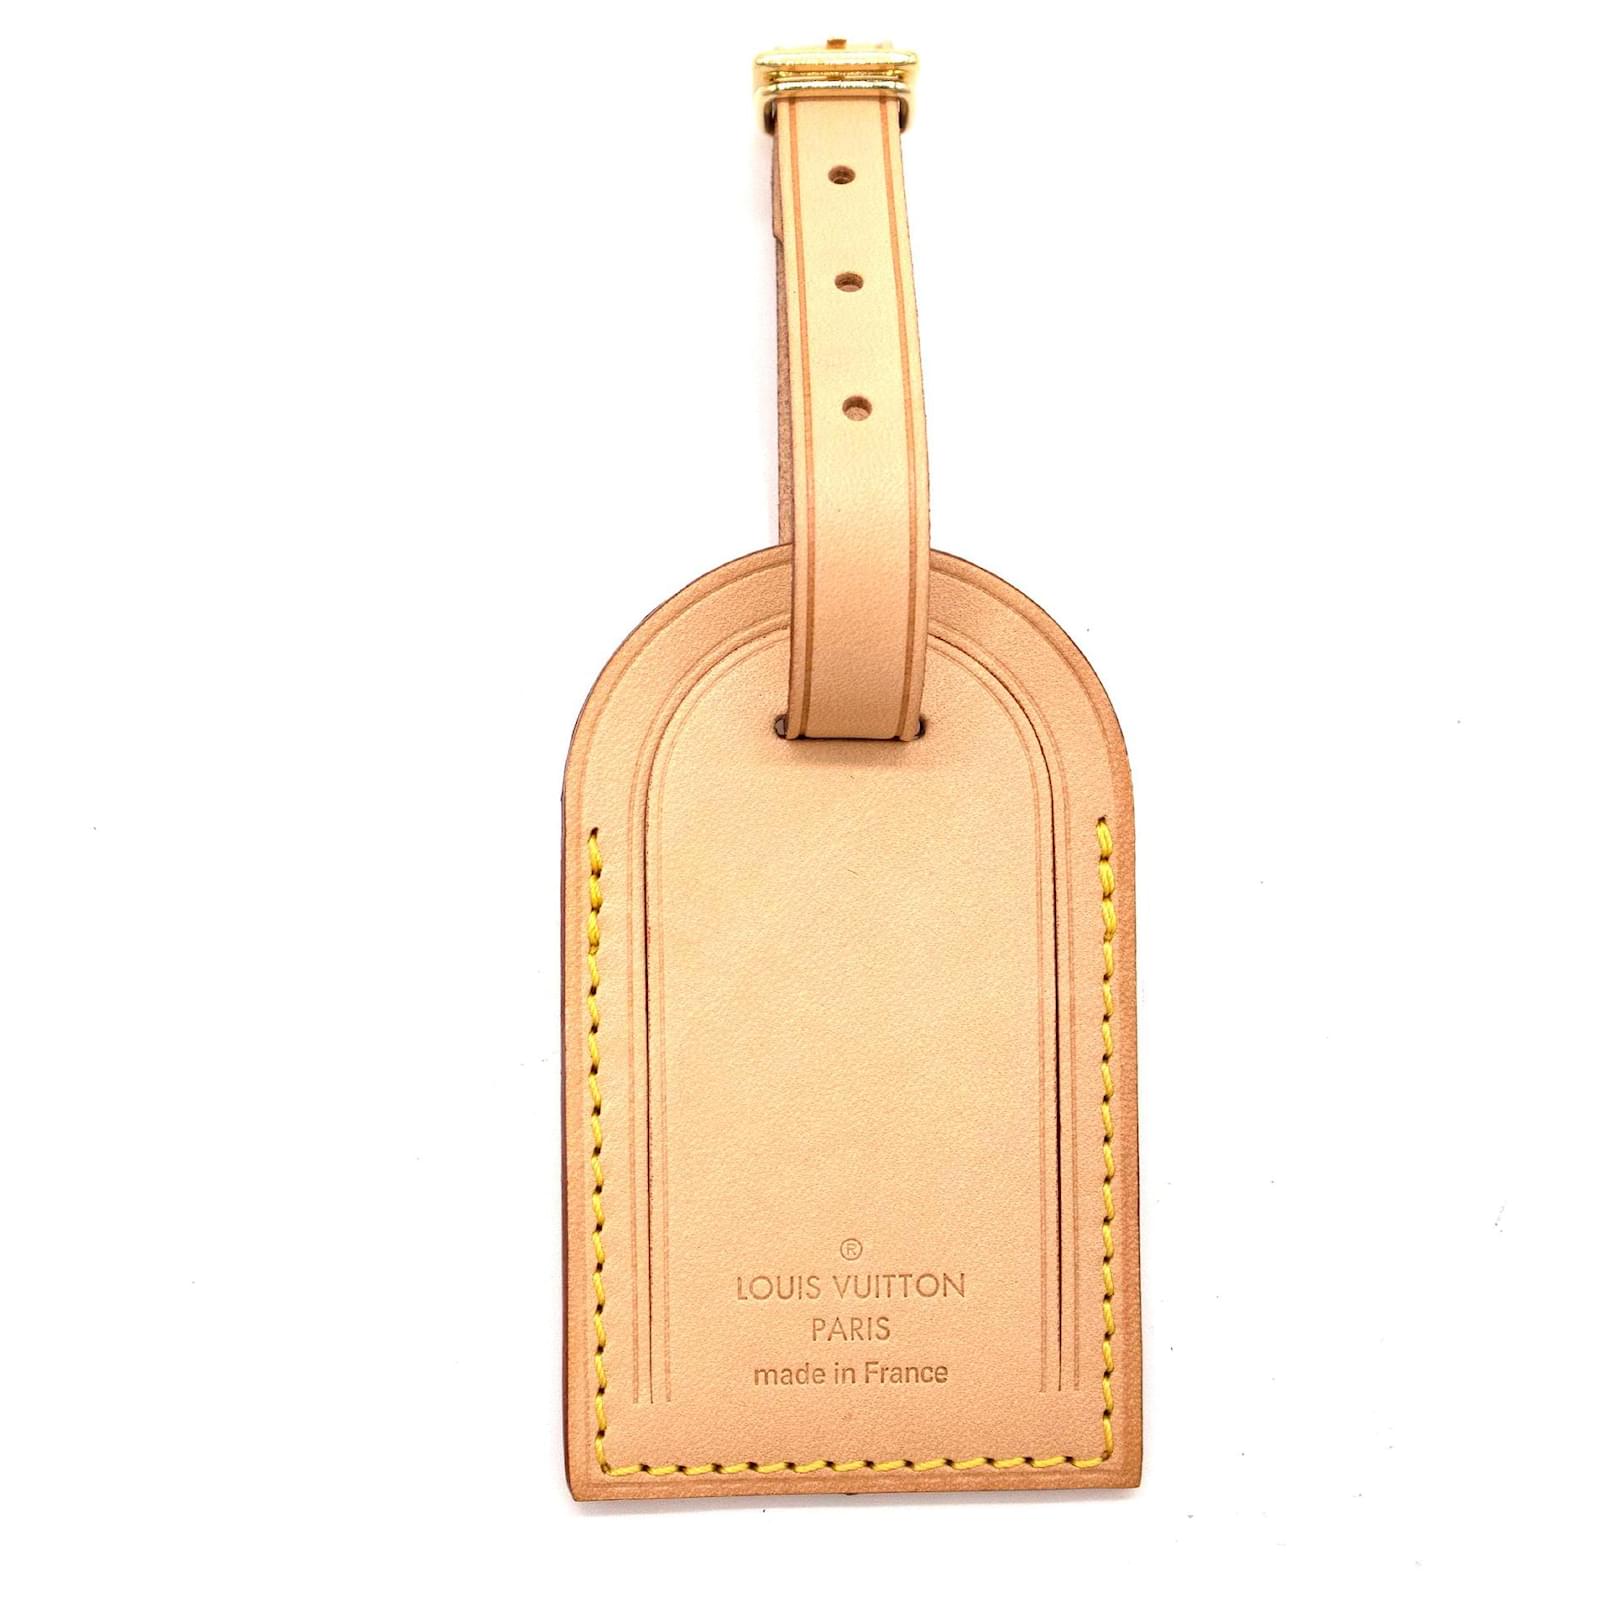 Louis Vuitton, Accessories, Authentic Louis Vuitton Bag Charm